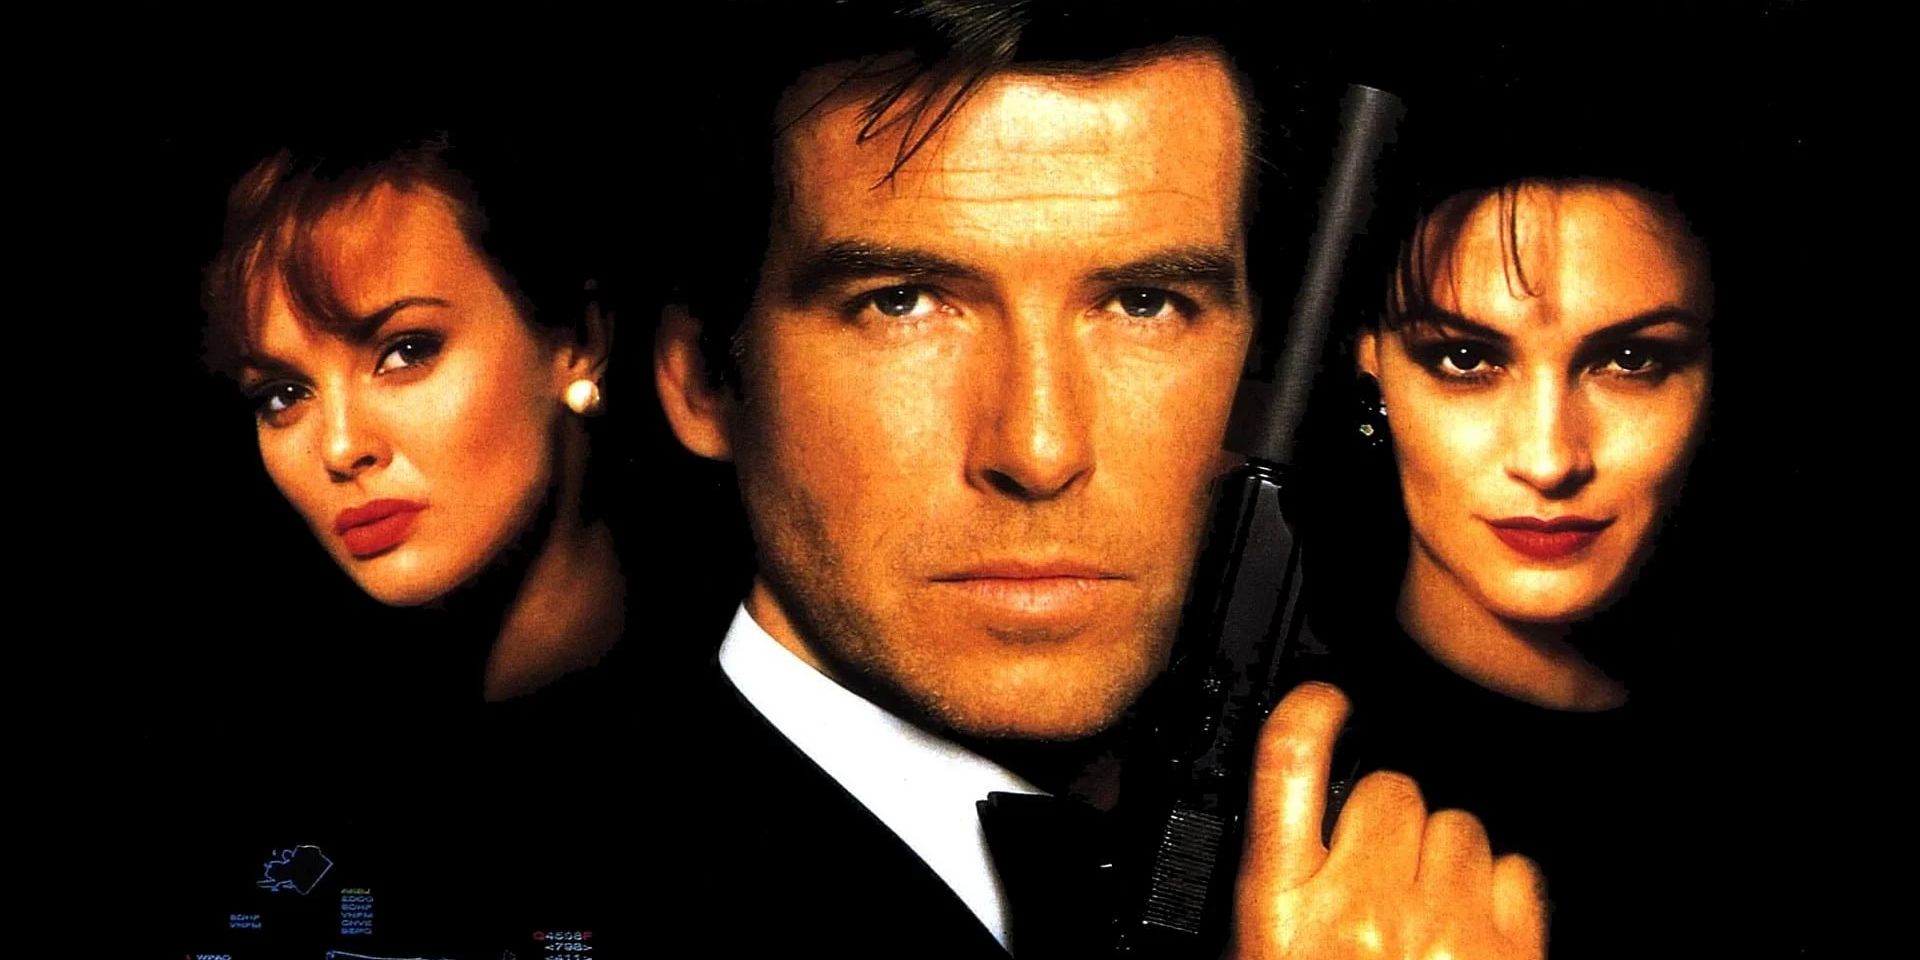 Gwiazda GoldenEye chce kobiety 007 w kolejnym filmie o Jamesie Bondzie